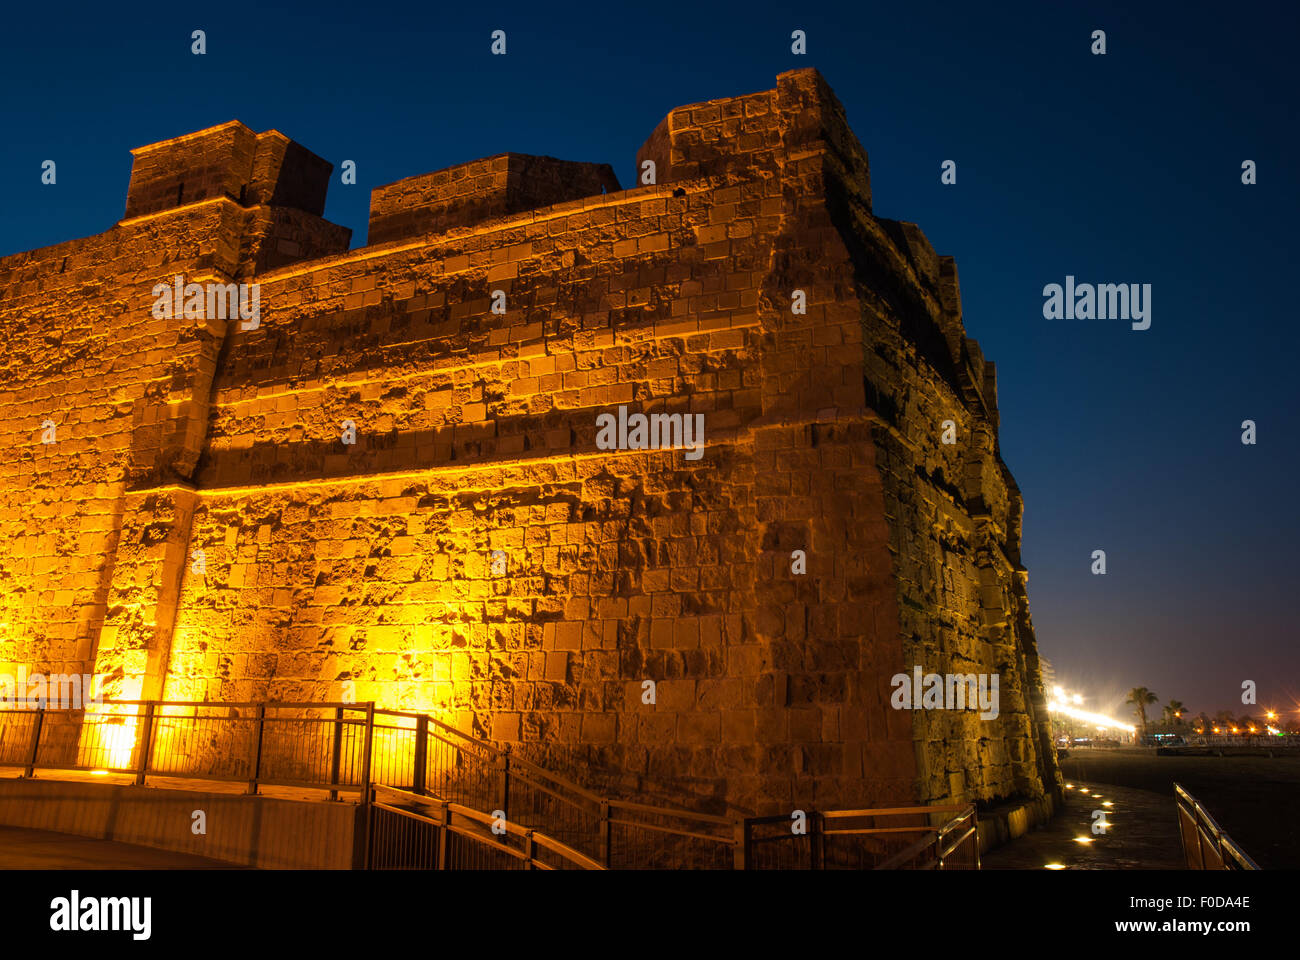 Larnaca-Burg bei Nacht mit Beleuchtung. Finikoudes. Larnaca. Zypern. Stockfoto